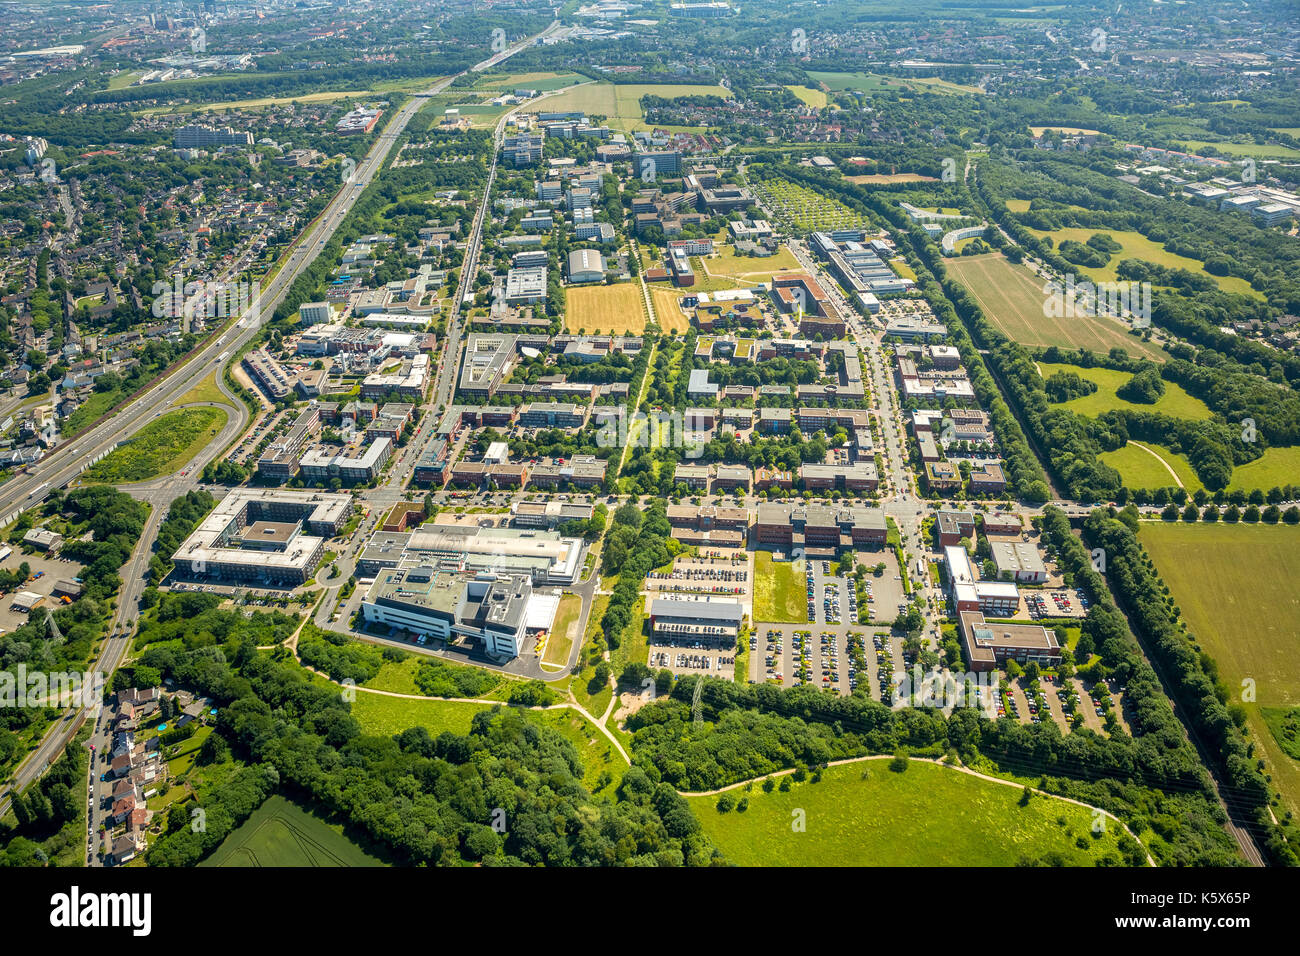 TechnologieParkDortmund sur le campus de l'Université de Dortmund, Dortmund, région de la Ruhr, Rhénanie-du-Nord-Westphalie, Allemagne Dortmund, Europe, phot aérien Banque D'Images